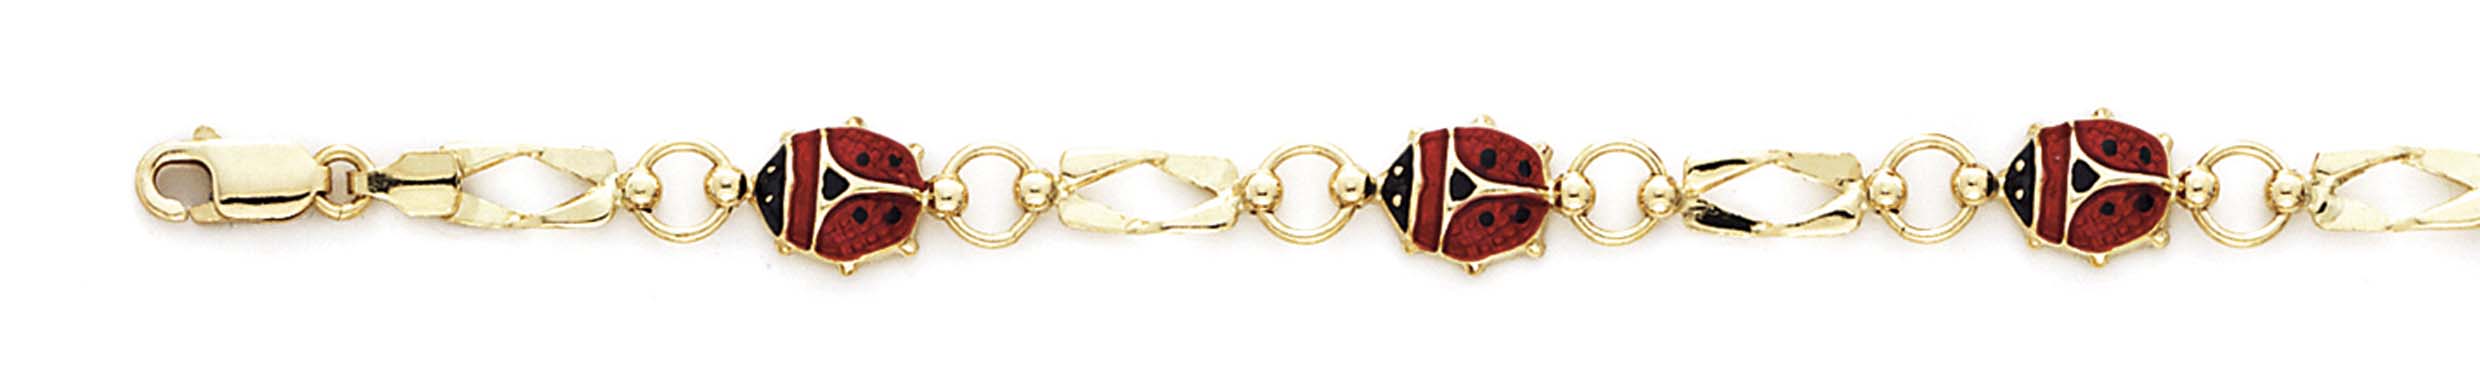 
14k Yellow Gold Enamel Ladybug Bracelet - 7.25 Inch
